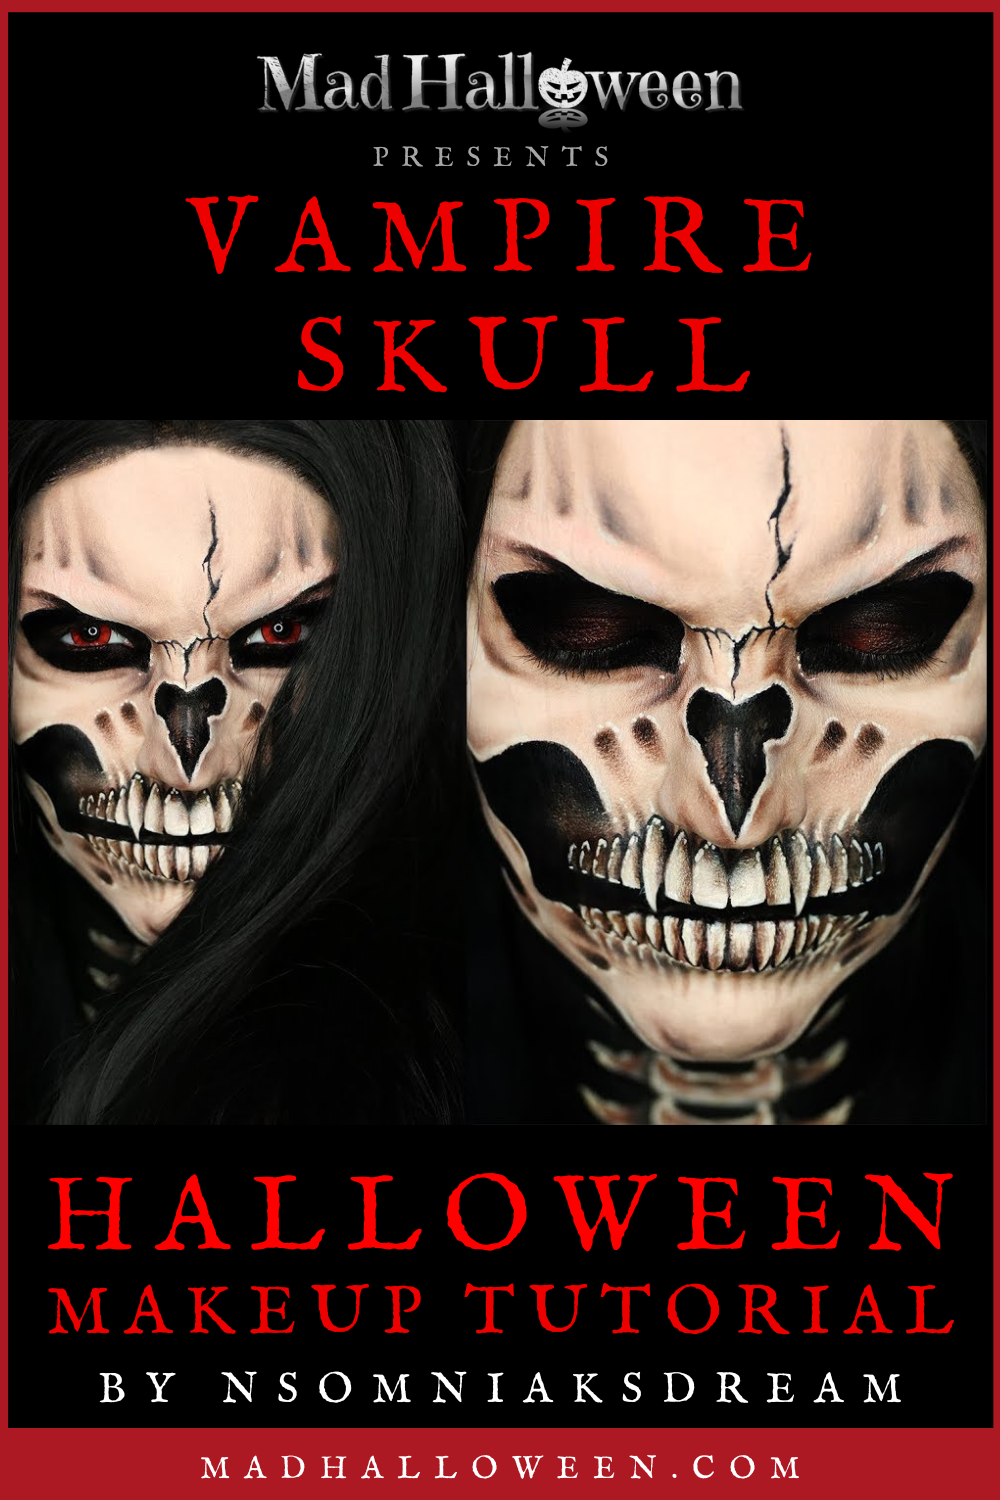 Vampire Skull Halloween Makeup Tutorial by NsomniaksDream - Mad Halloween